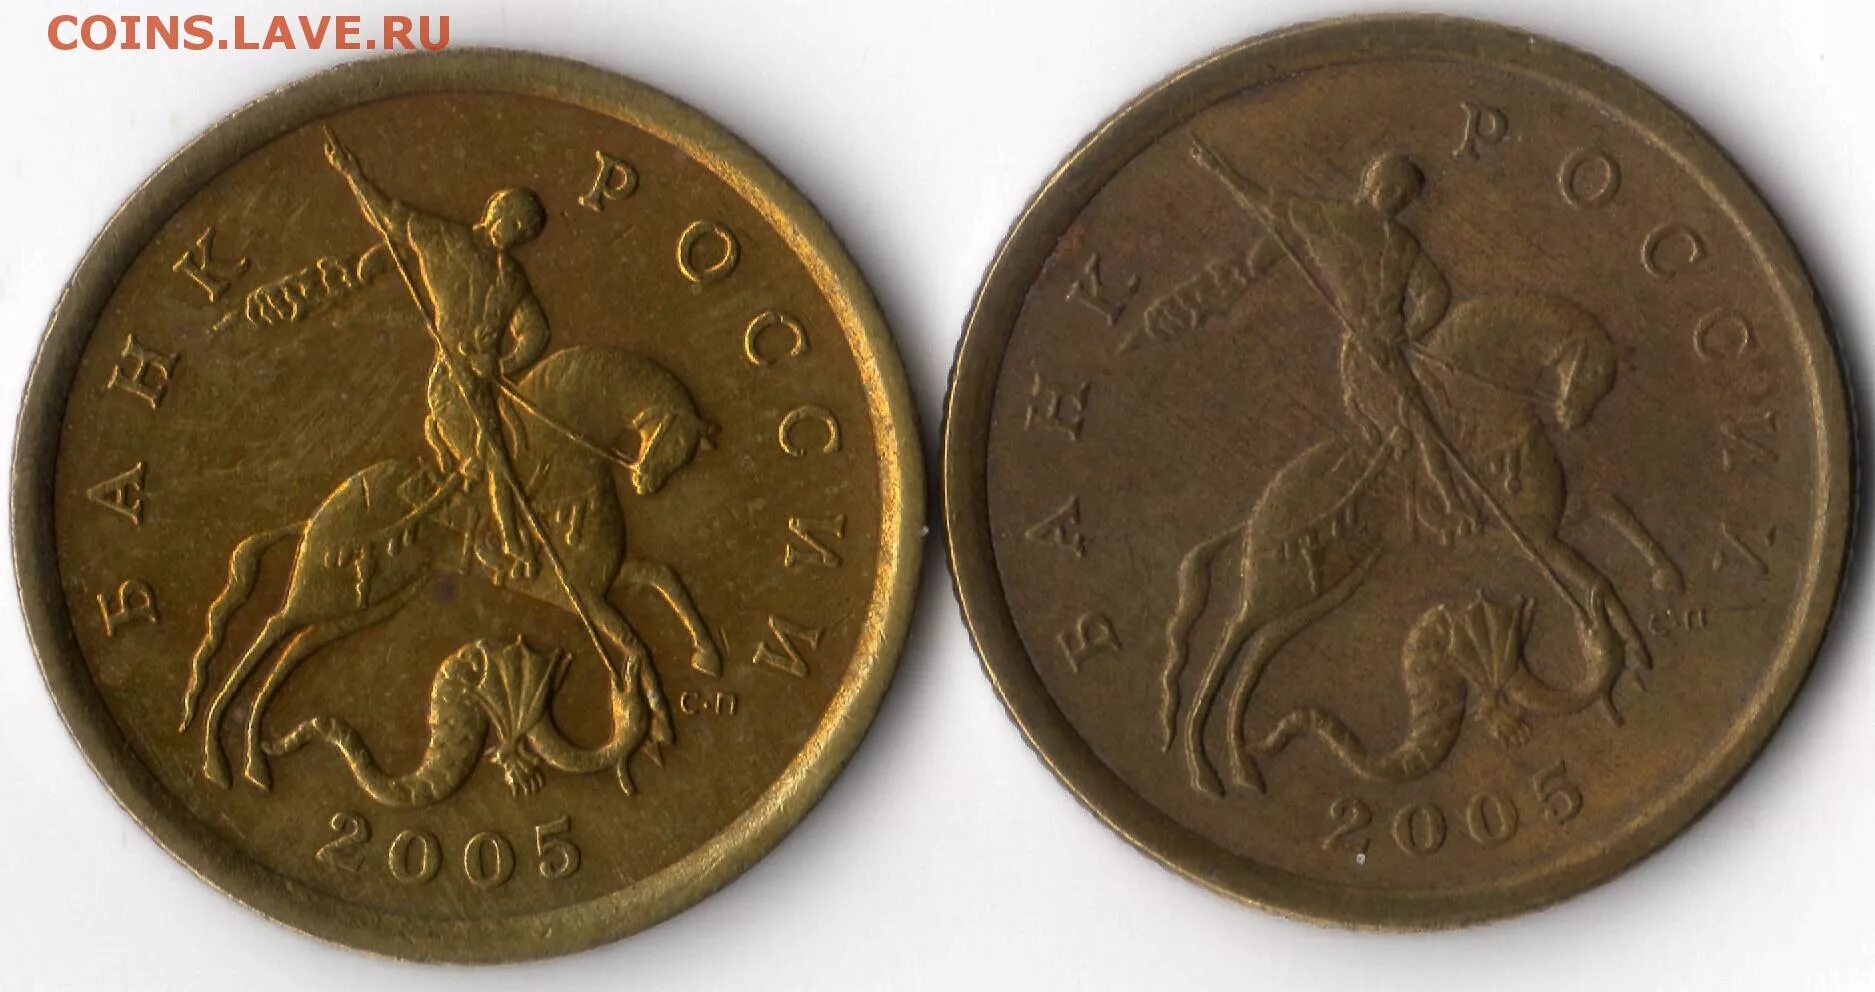 53 рубля 50 копеек. 50 Копеек 2005 СП реверс. Монета 5 копеек 1997. Монета достоинством в 50 копеек старинное.